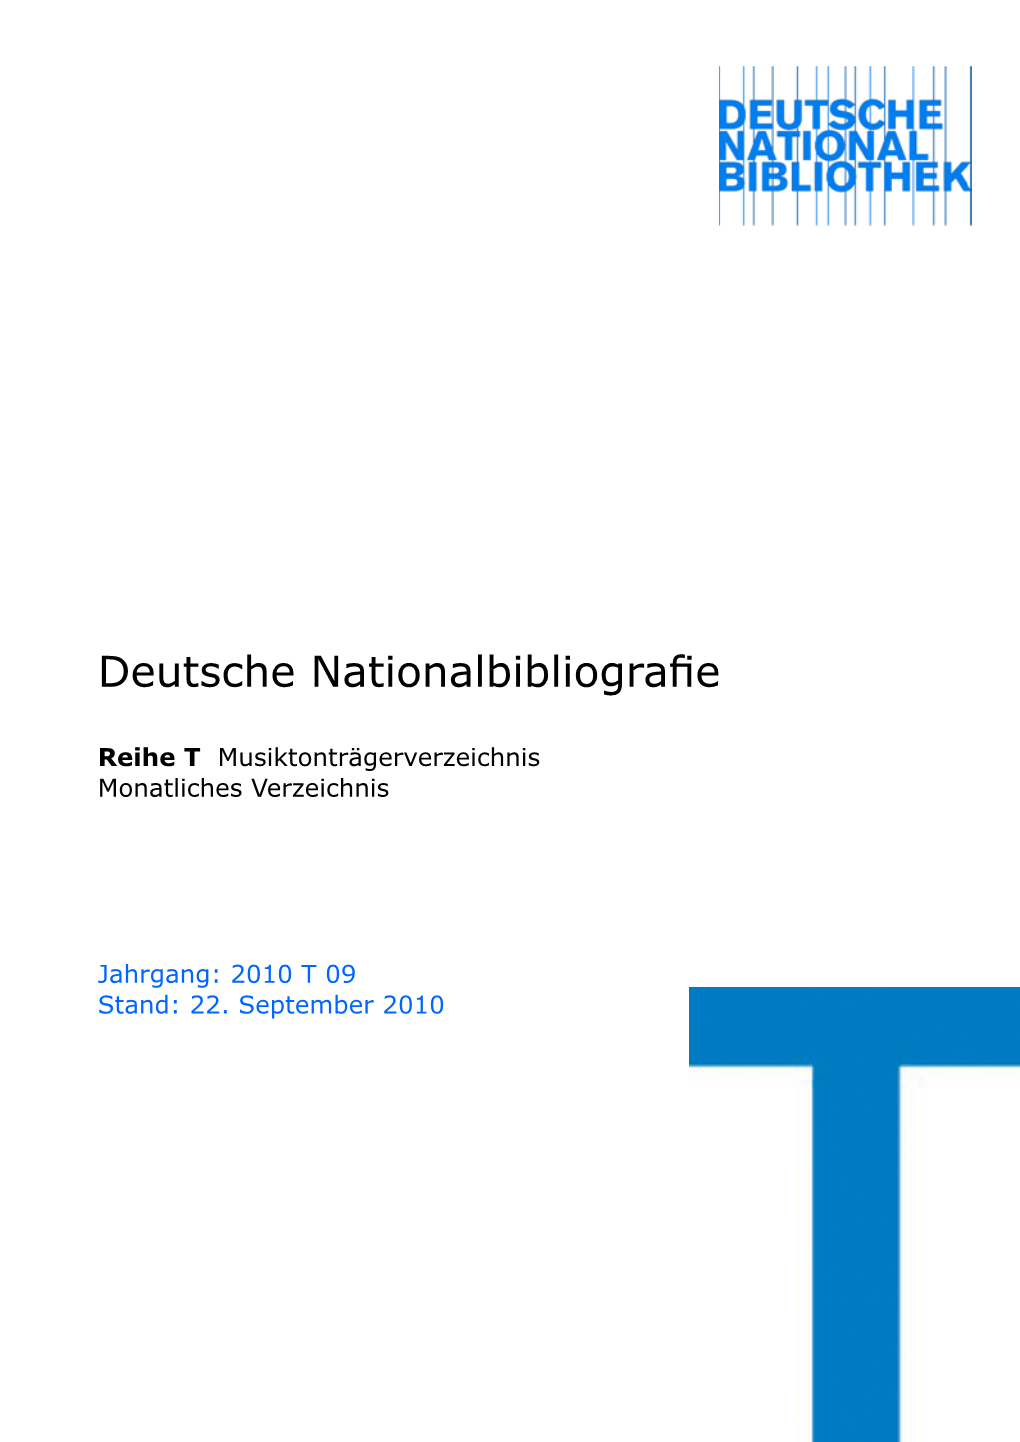 Deutsche Nationalbibliografie 2010 T 09